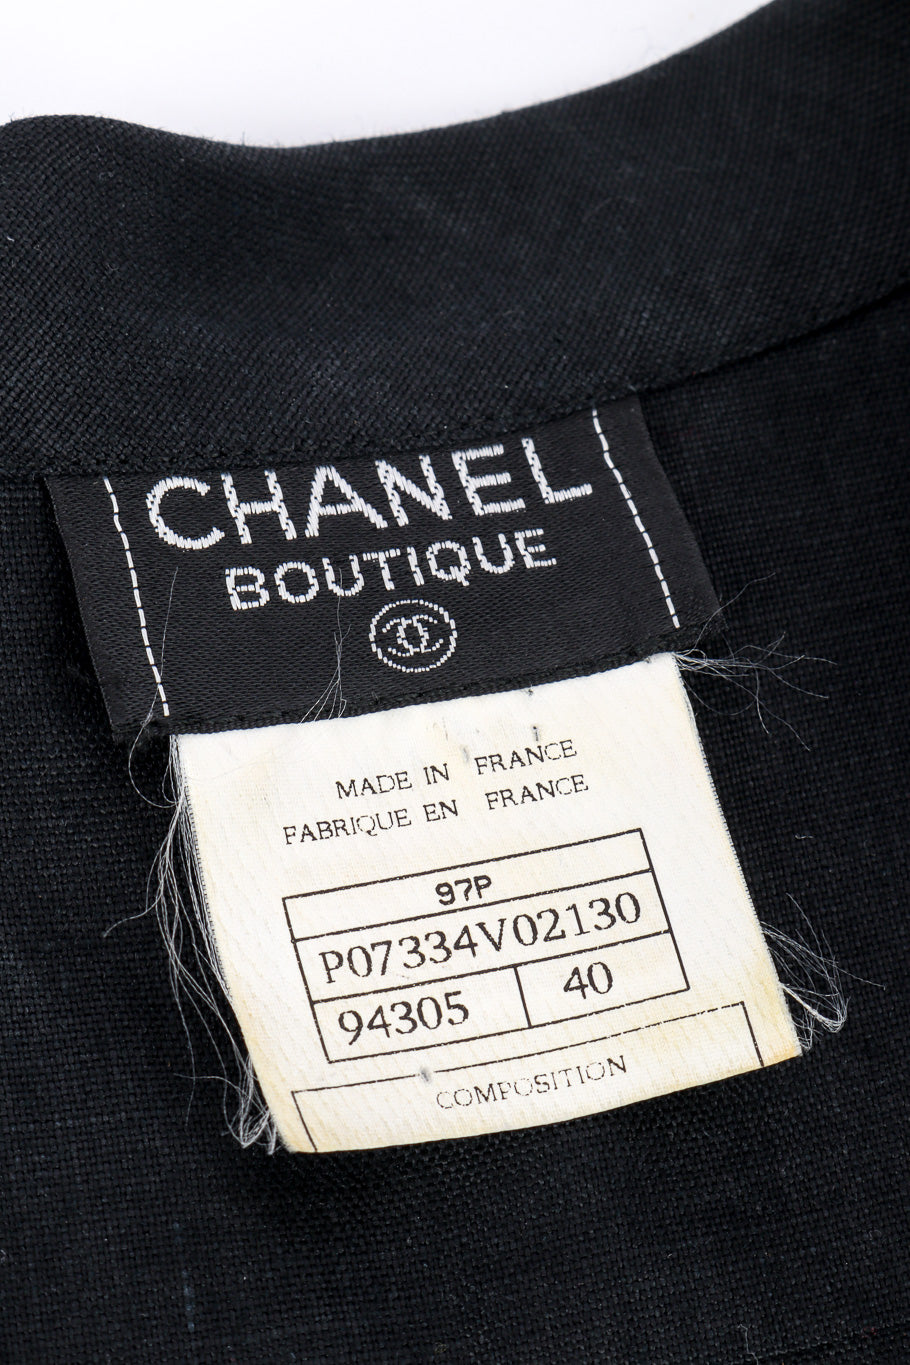 Vintage Chanel CC Button Linen Shirt signature label closeup @recessla